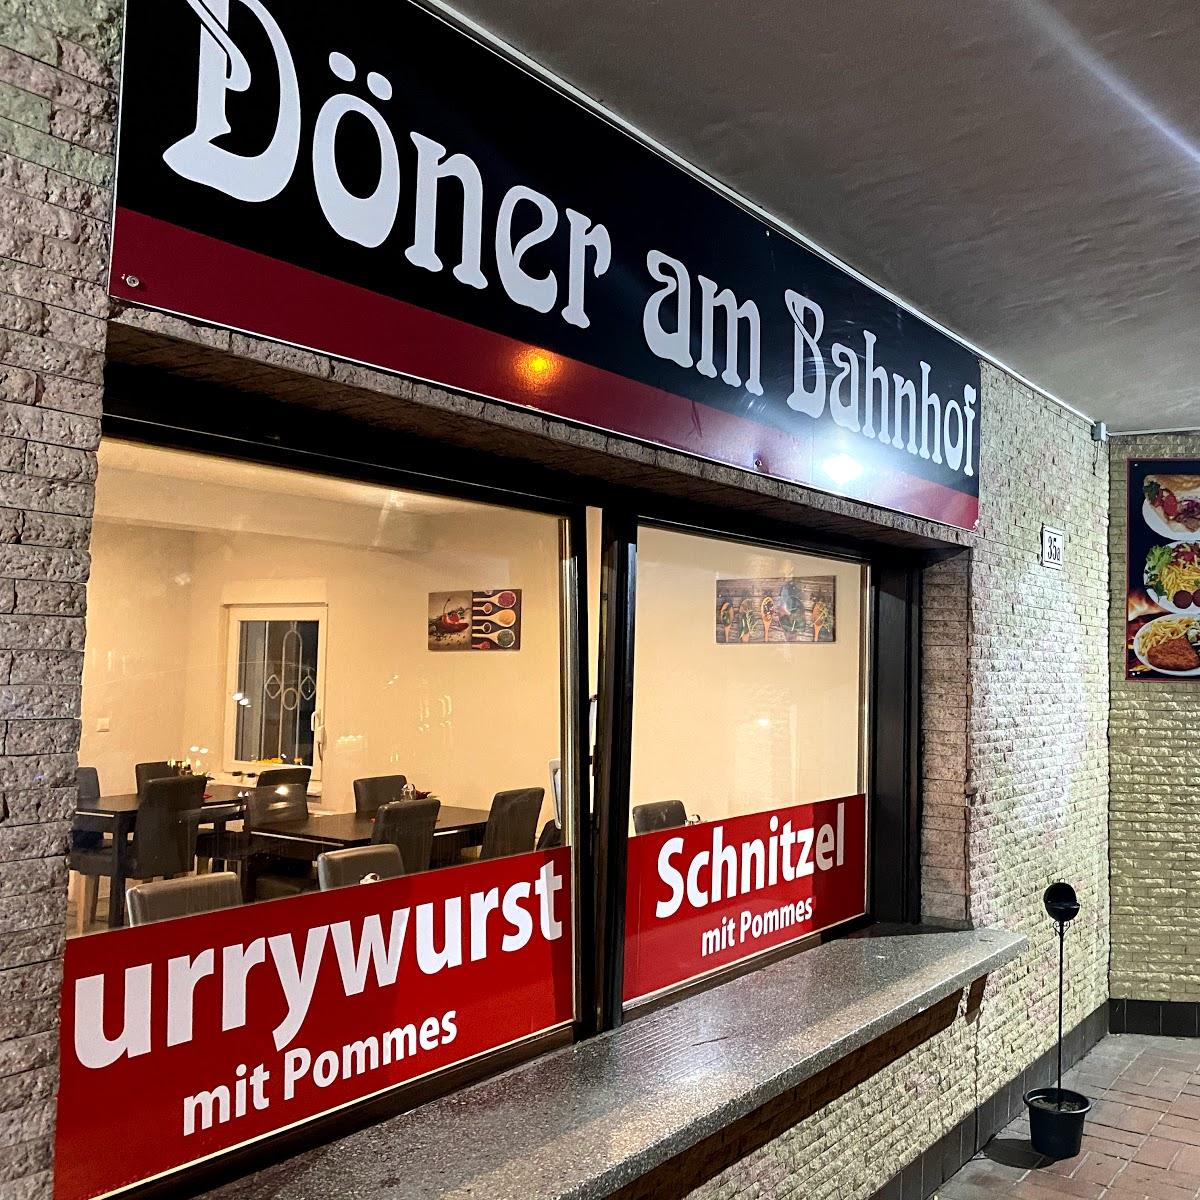 Restaurant "Döner am Bahnhof" in Perleberg